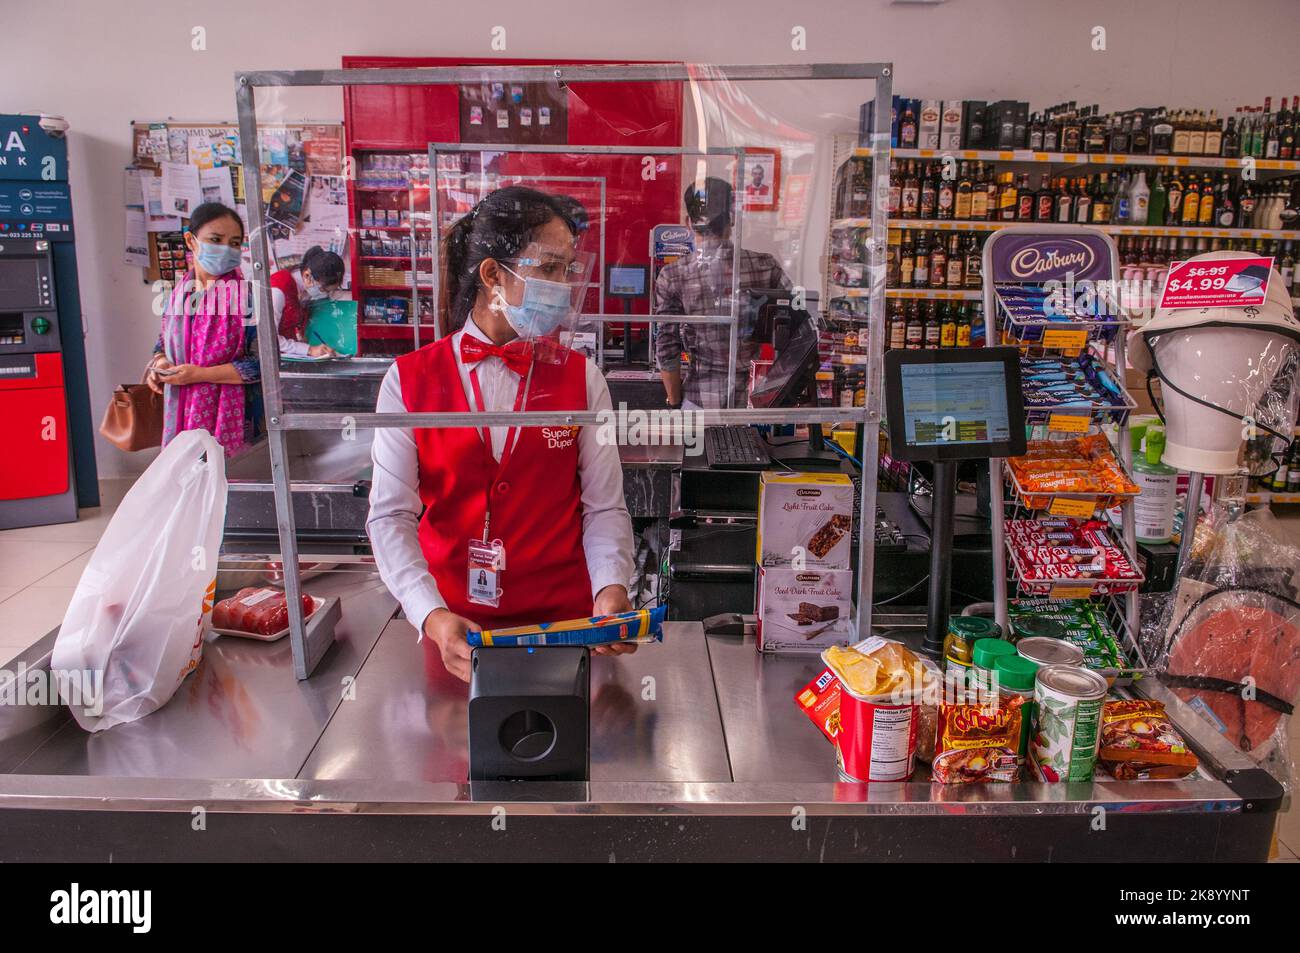 En raison d'une épidémie de COVID - 19, un caissier de supermarché, à un comptoir de caisse, porte un écran facial de protection. Phnom Penh, Cambodge. © Kraig Lieb Banque D'Images